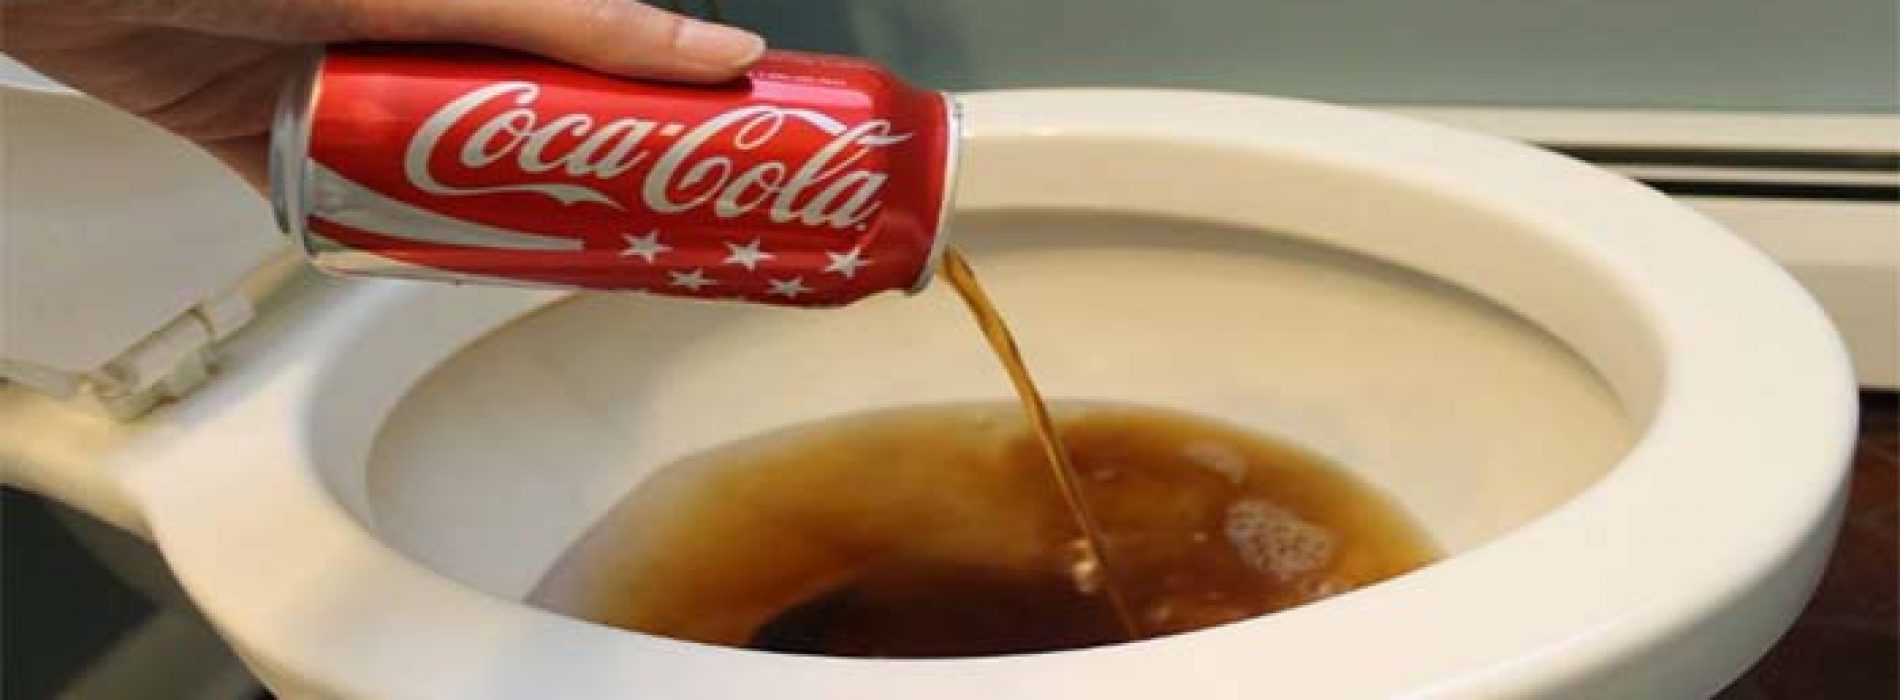 20 praktische toepassingen voor cola die aantonen dat het niet thuishoort in het menselijk lichaam